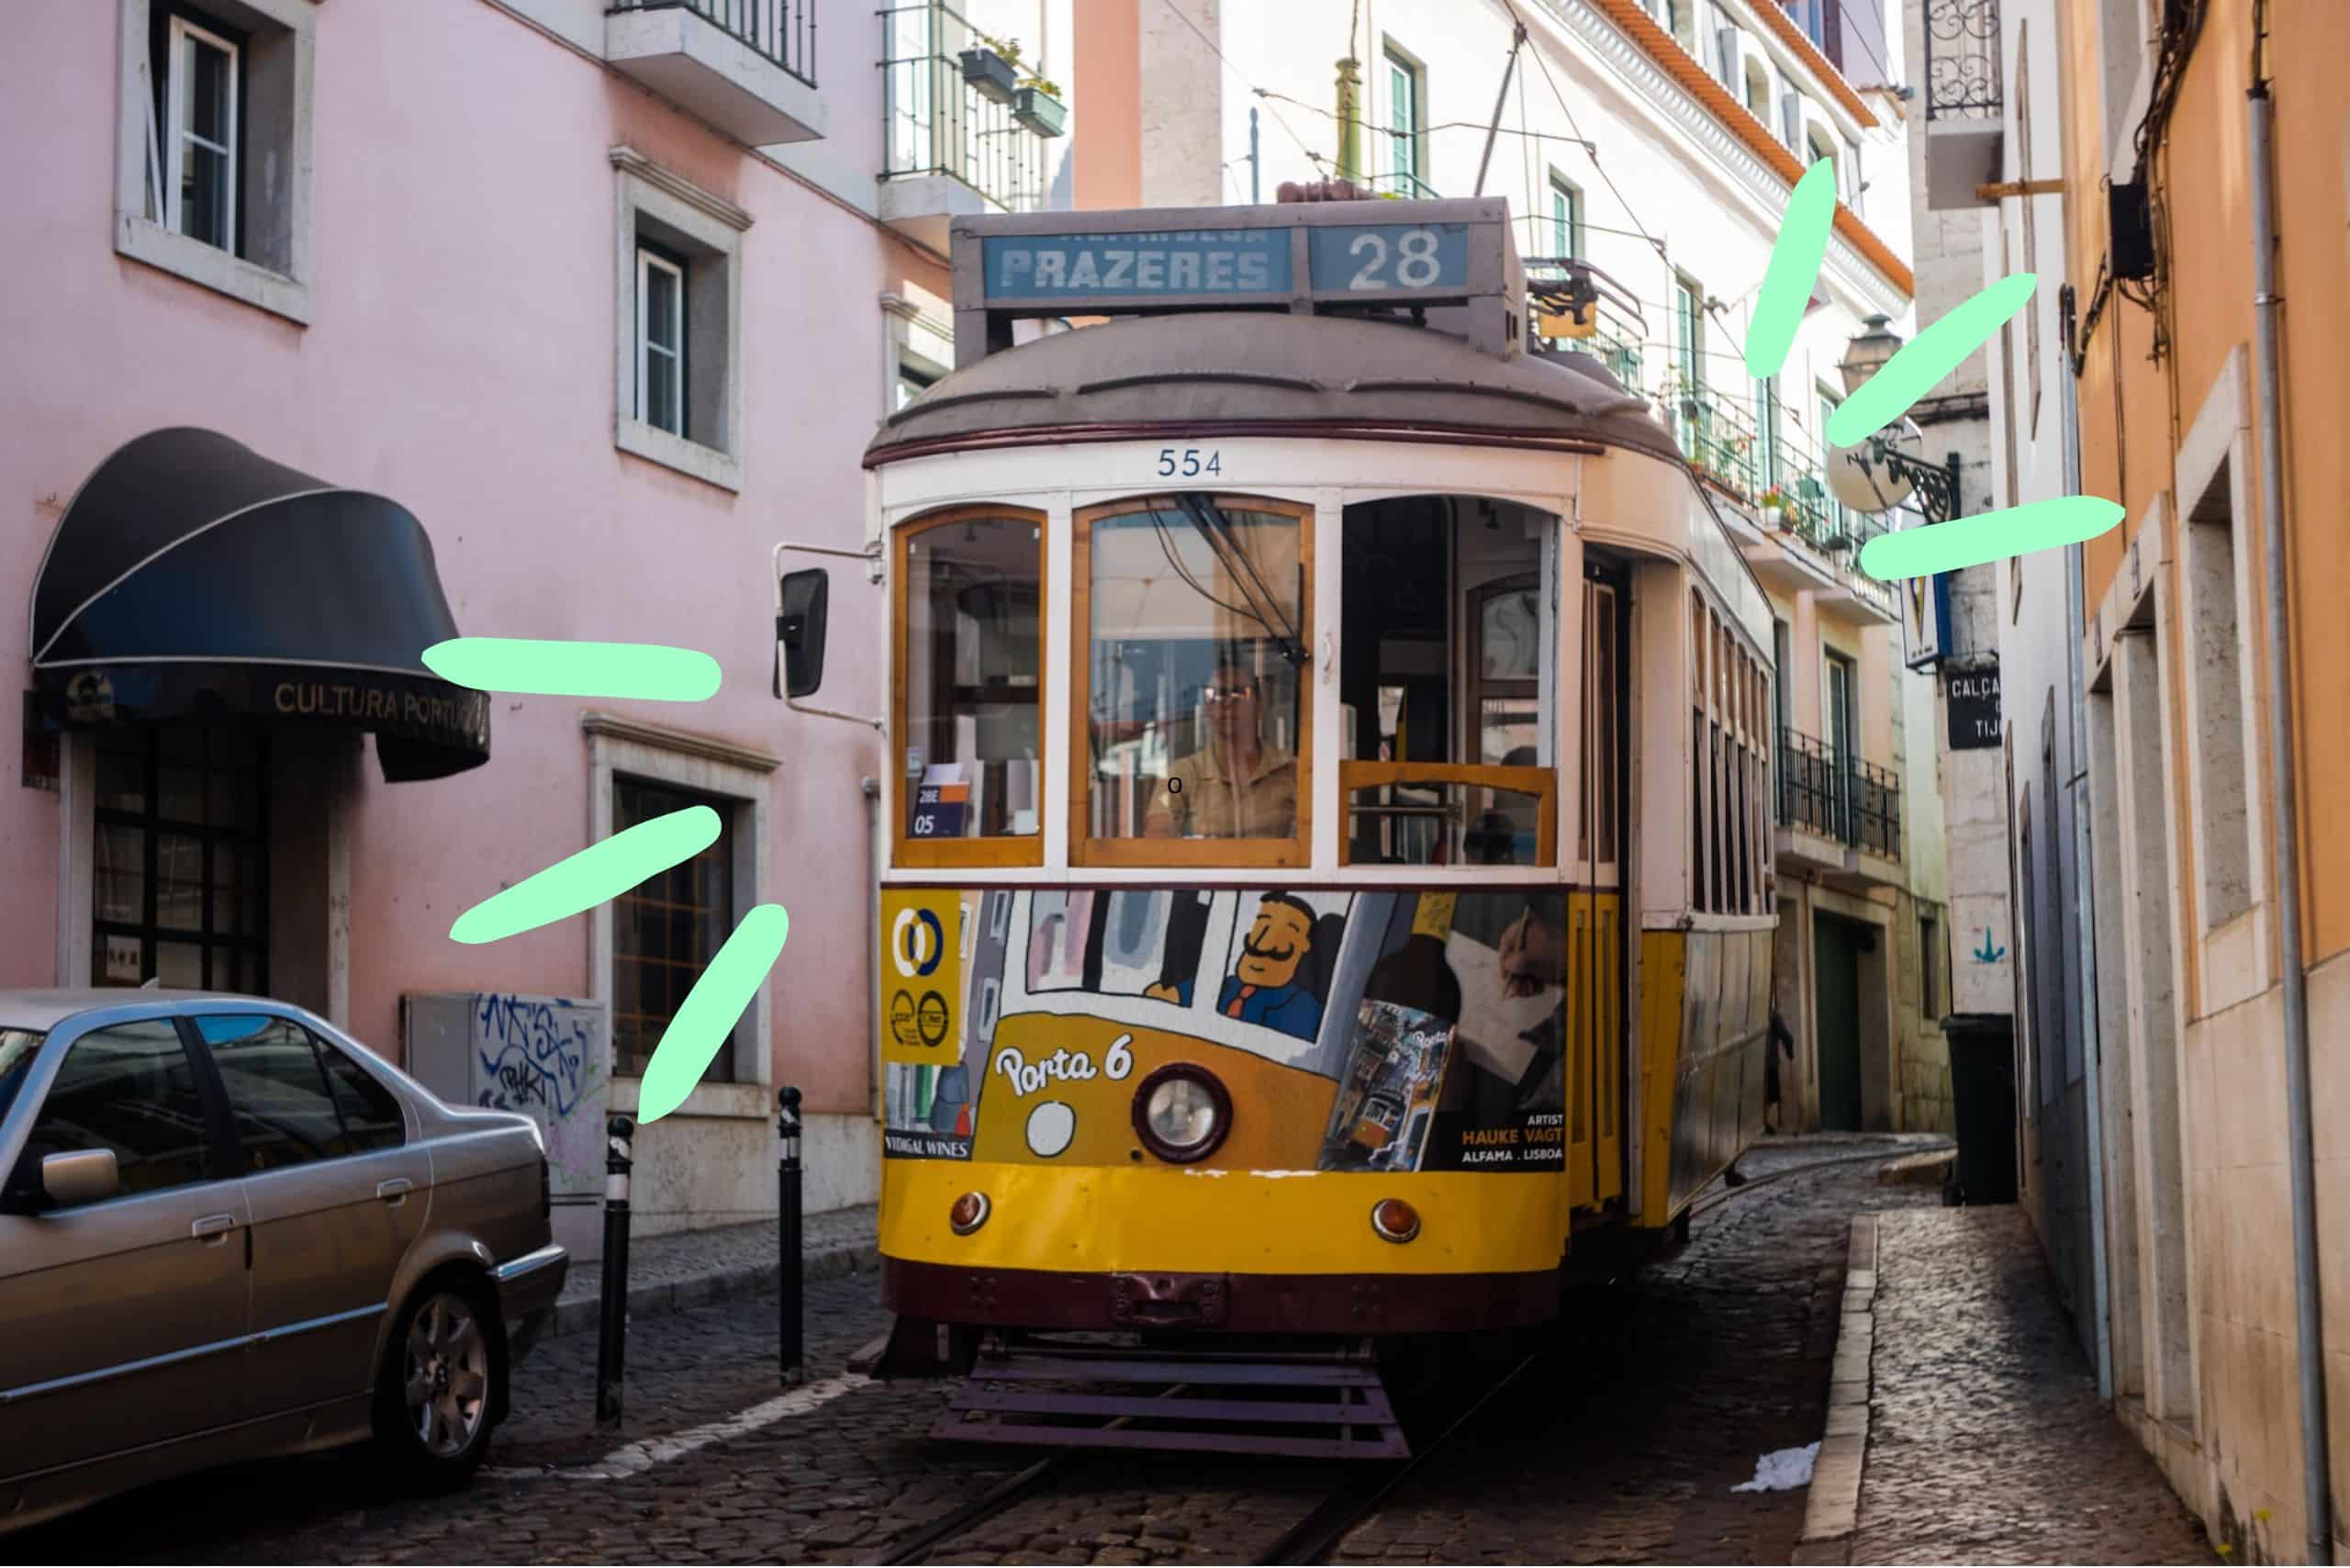 La façon idéale de visiter Lisbonne : Prenez le Tram 28 et une croisière fluviale 17